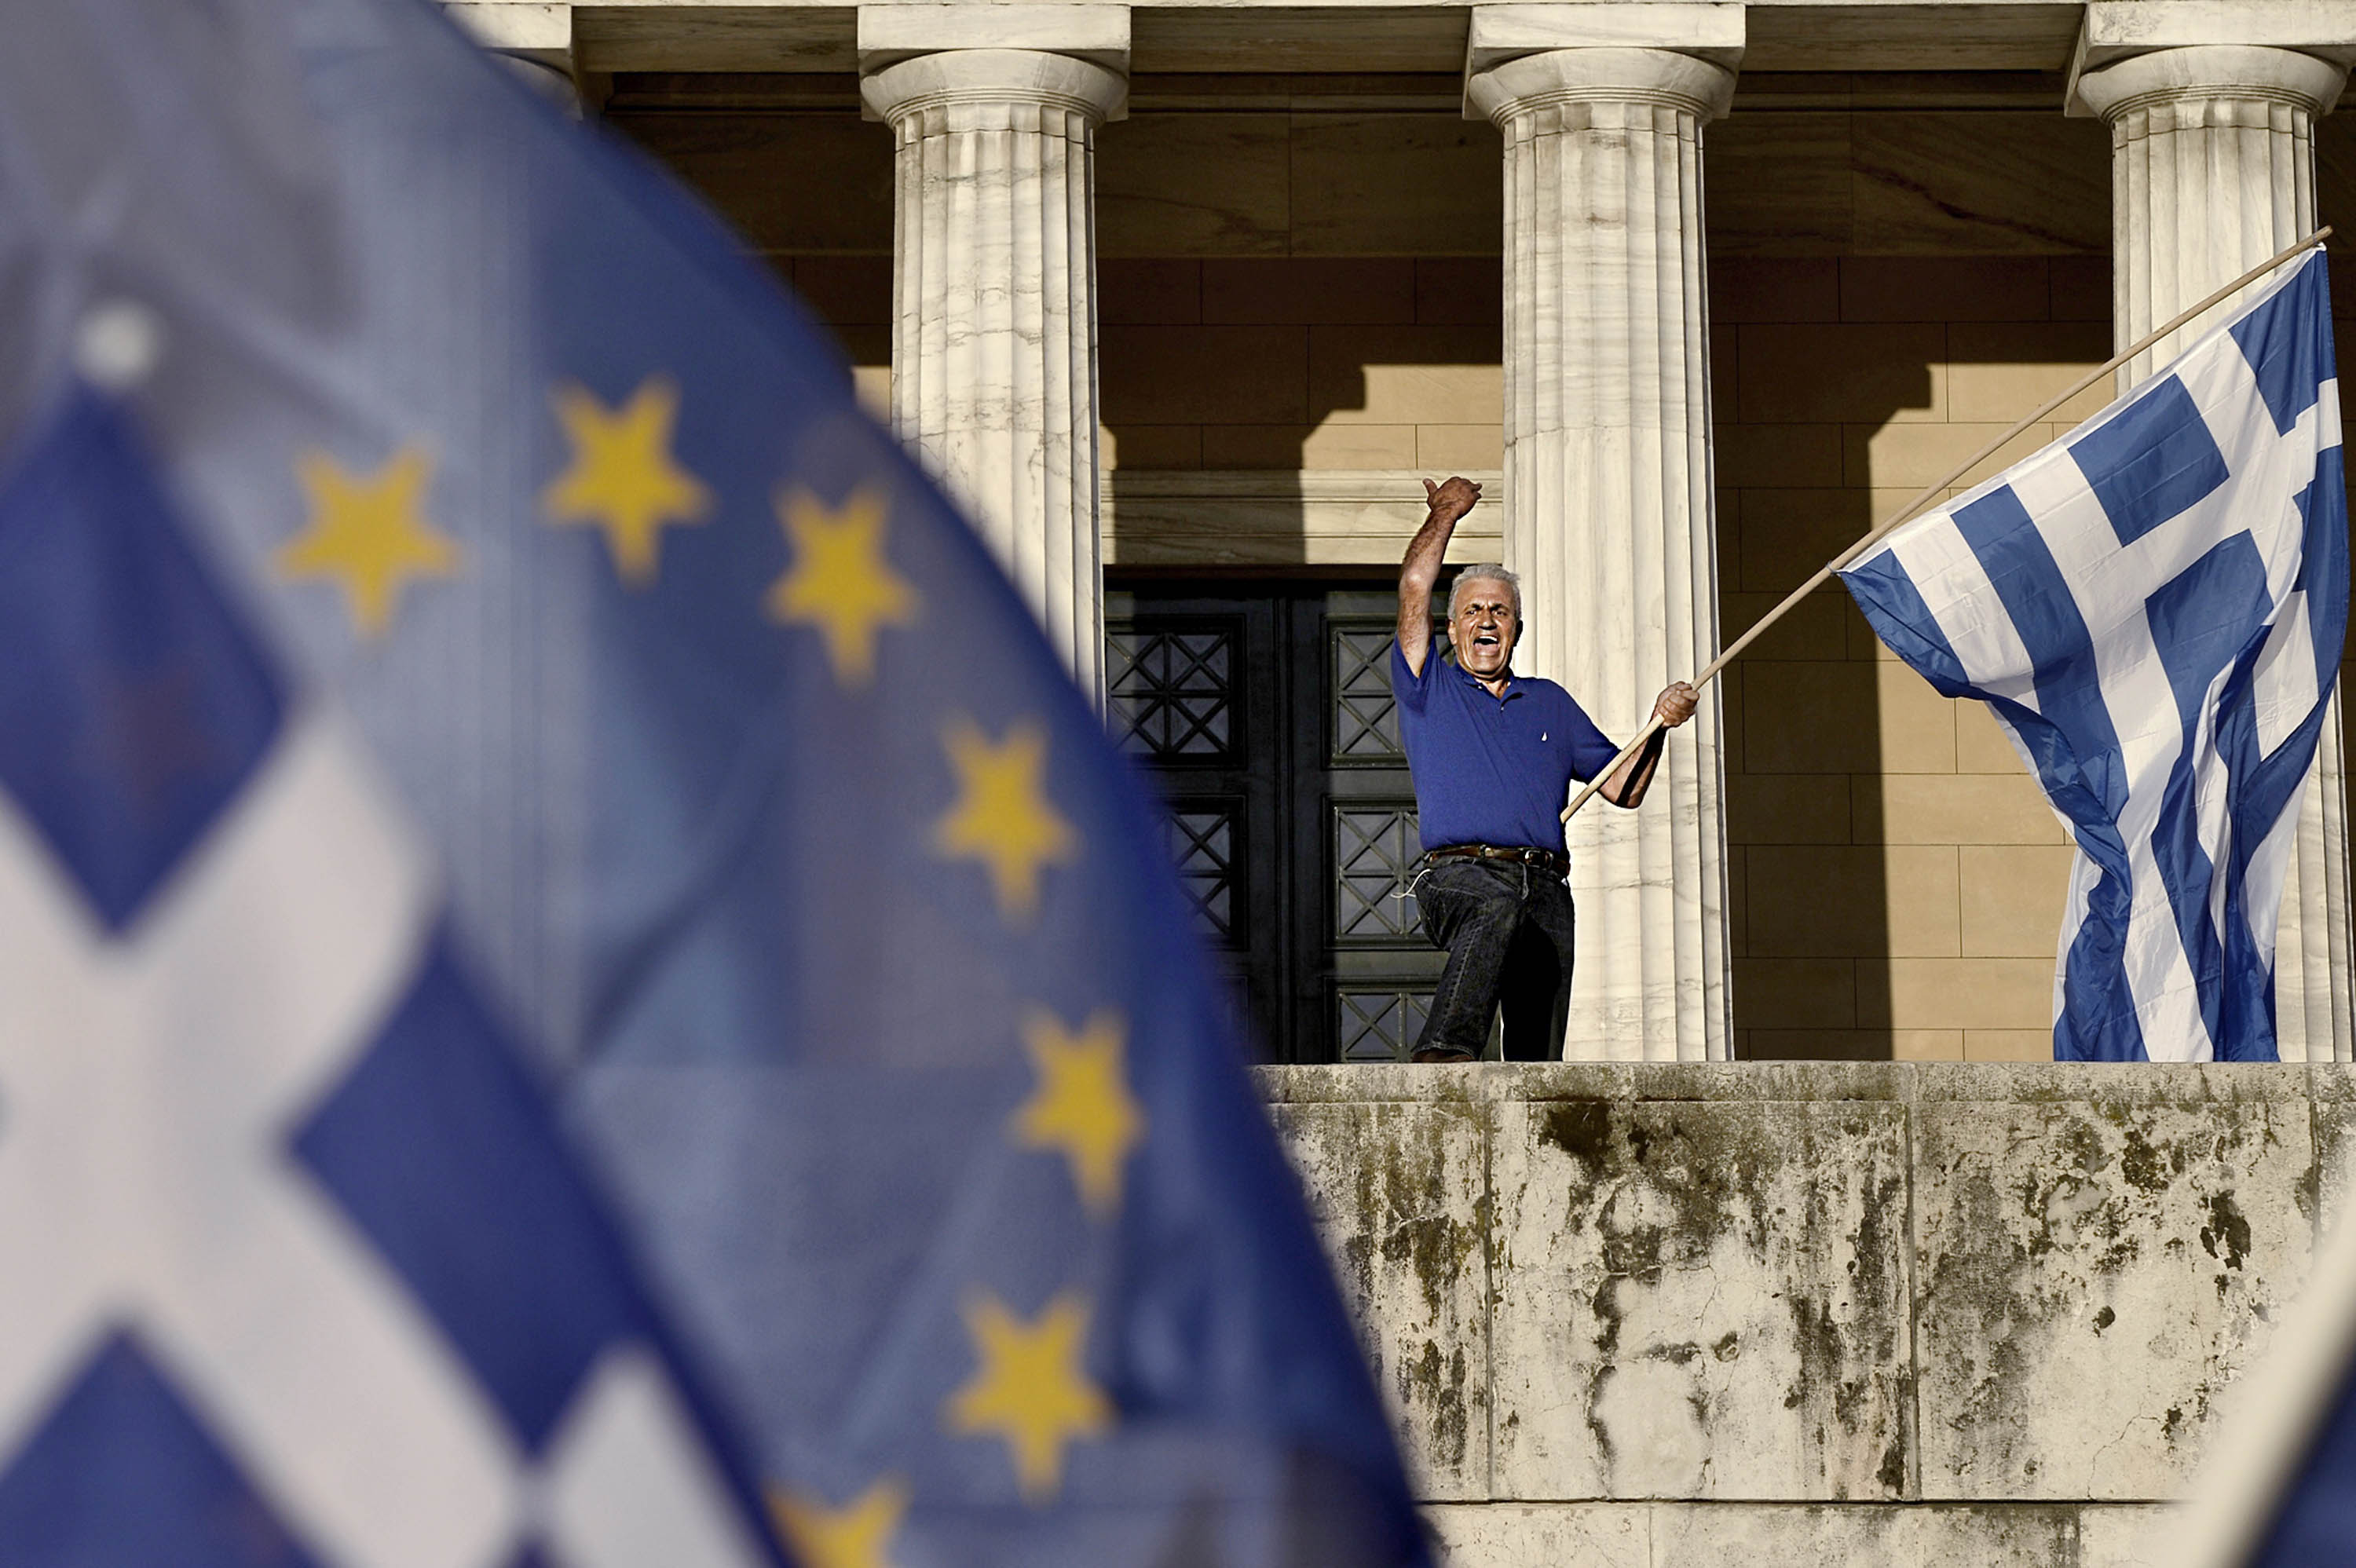 greece-crisis-euro-bailout